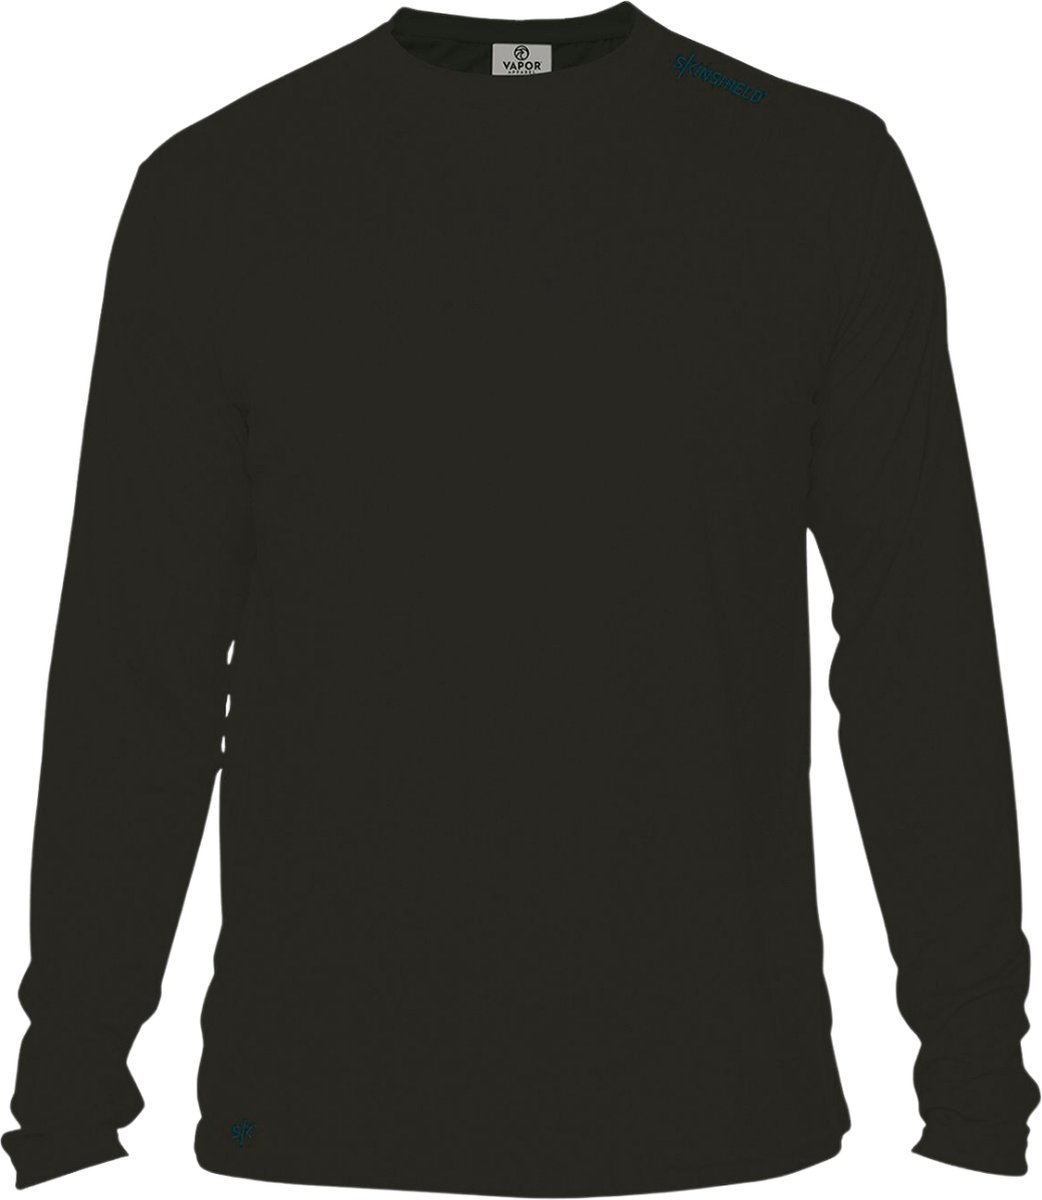 SKINSHIELD - UV-sportshirt met lange mouwen voor heren - FACTOR 50+ Zonbescherming - UV werend - S